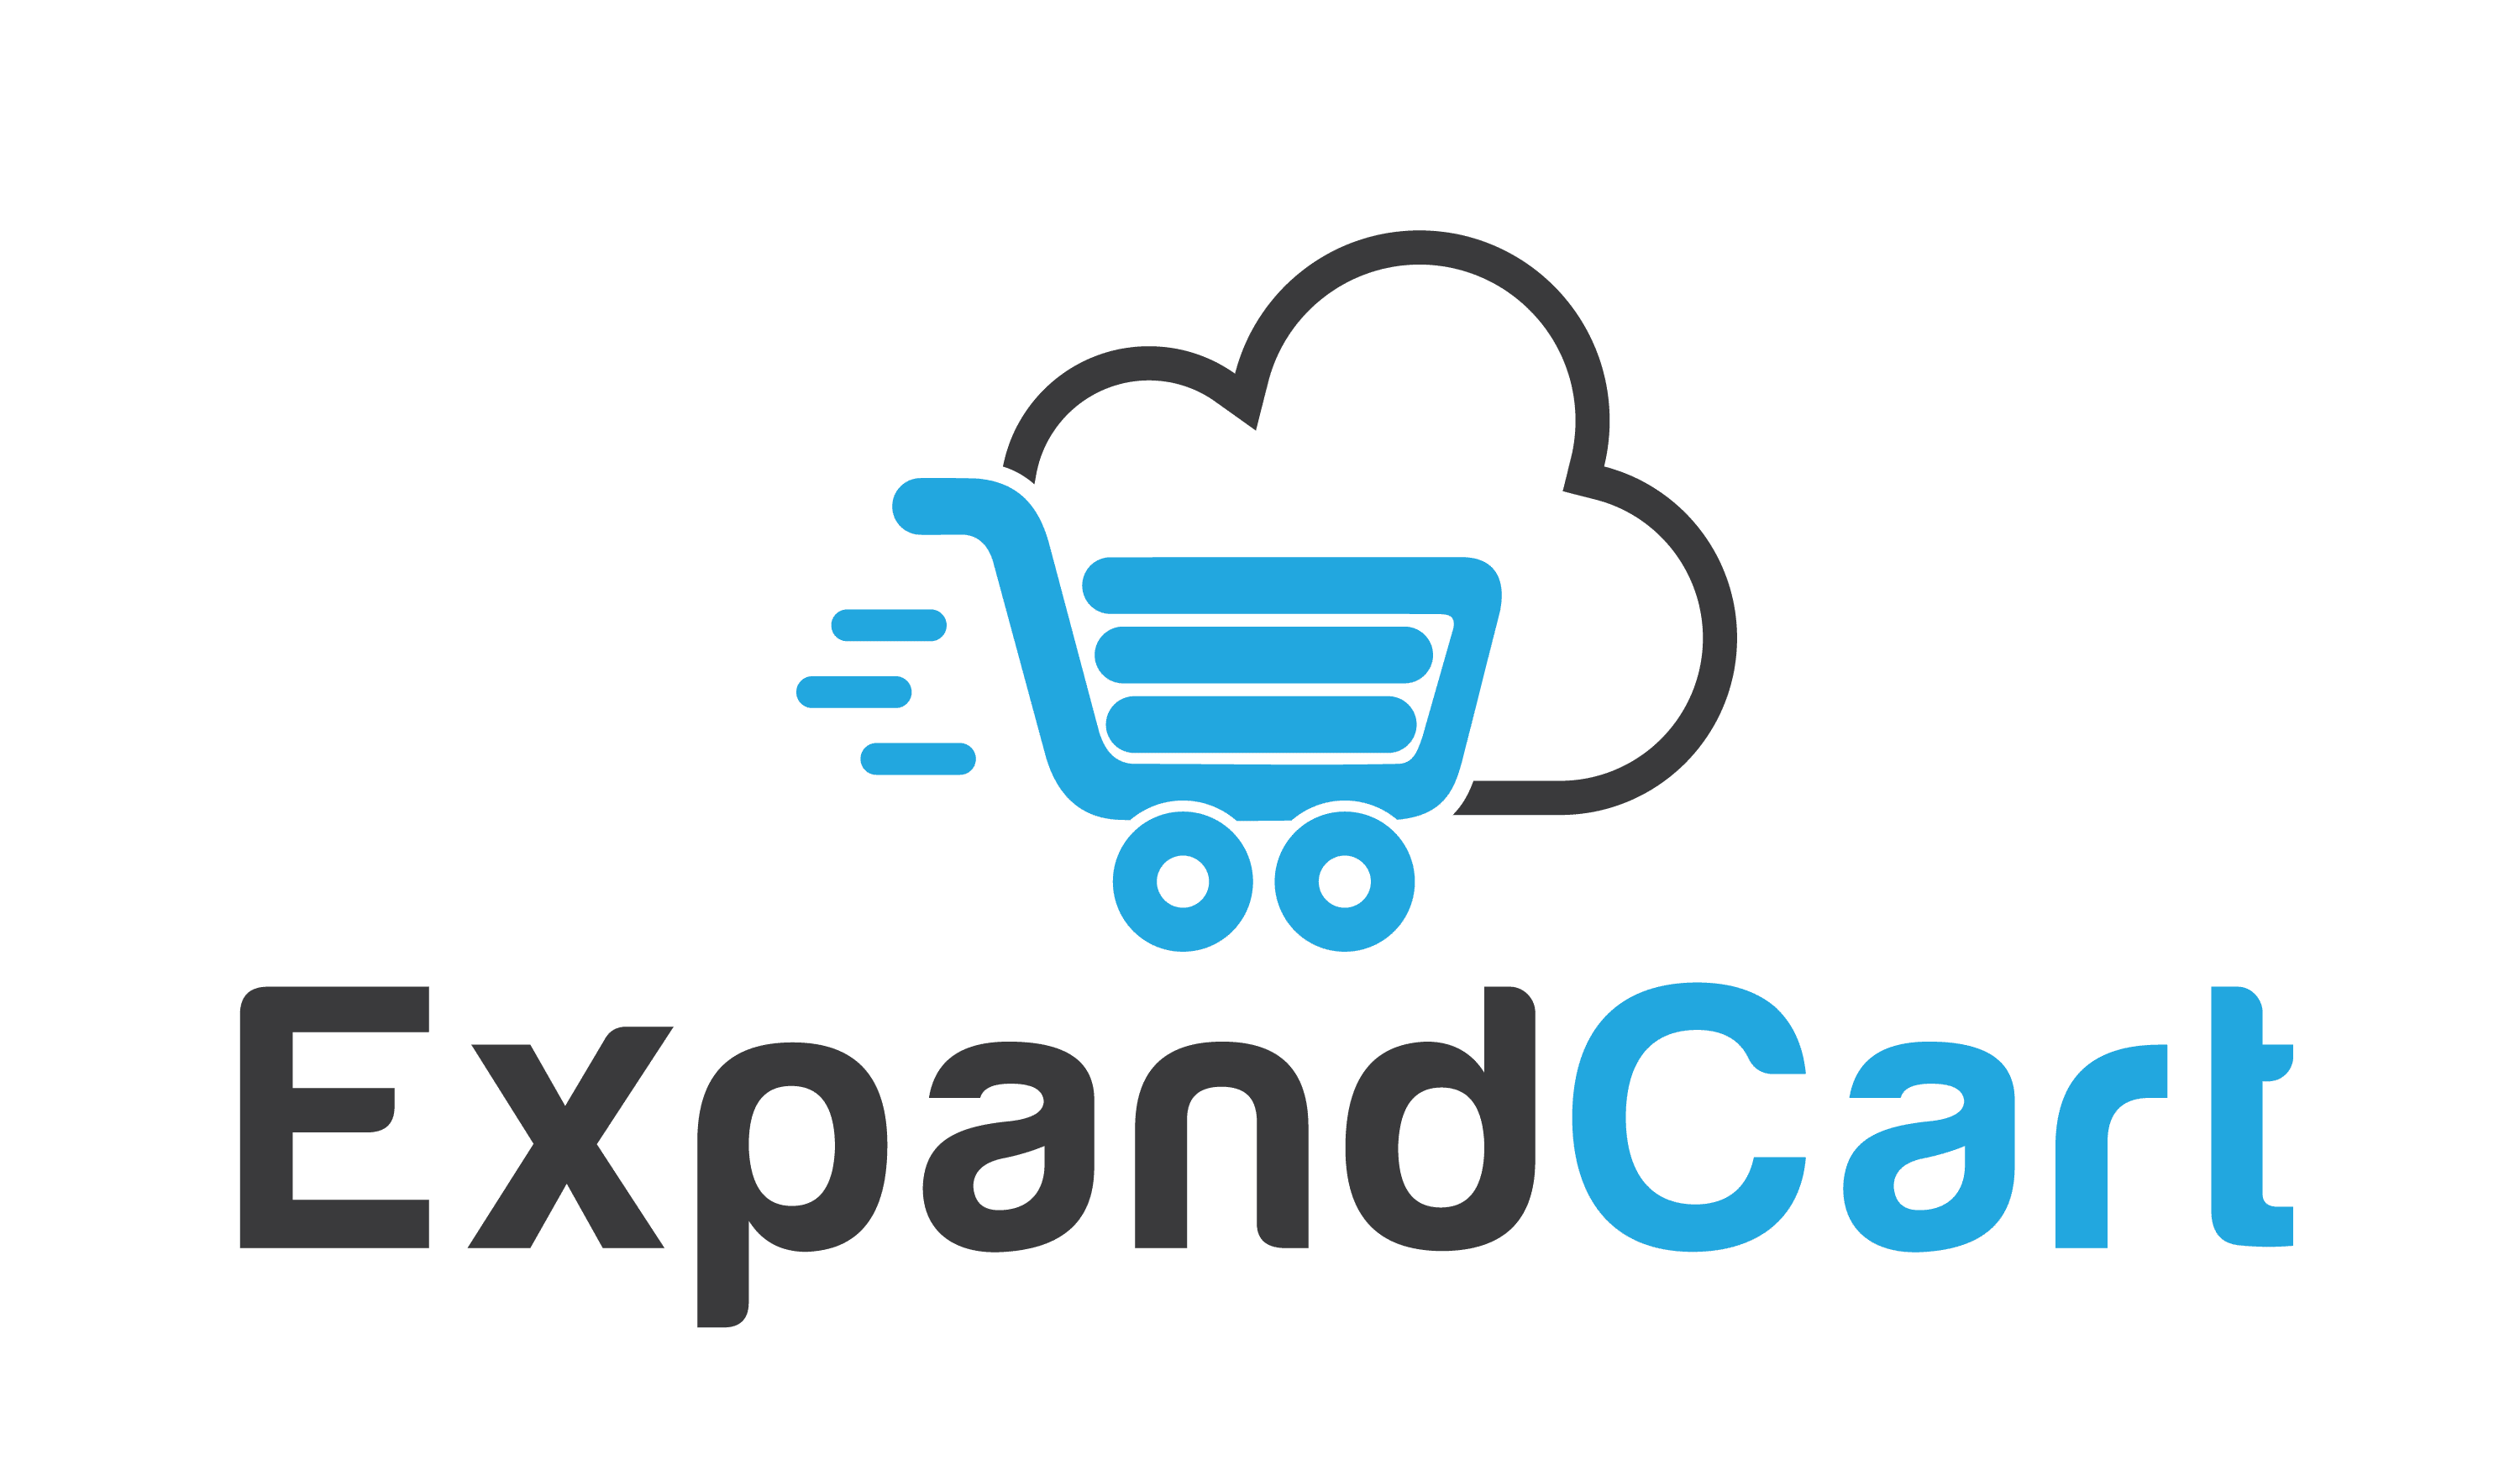 ExpandCart 